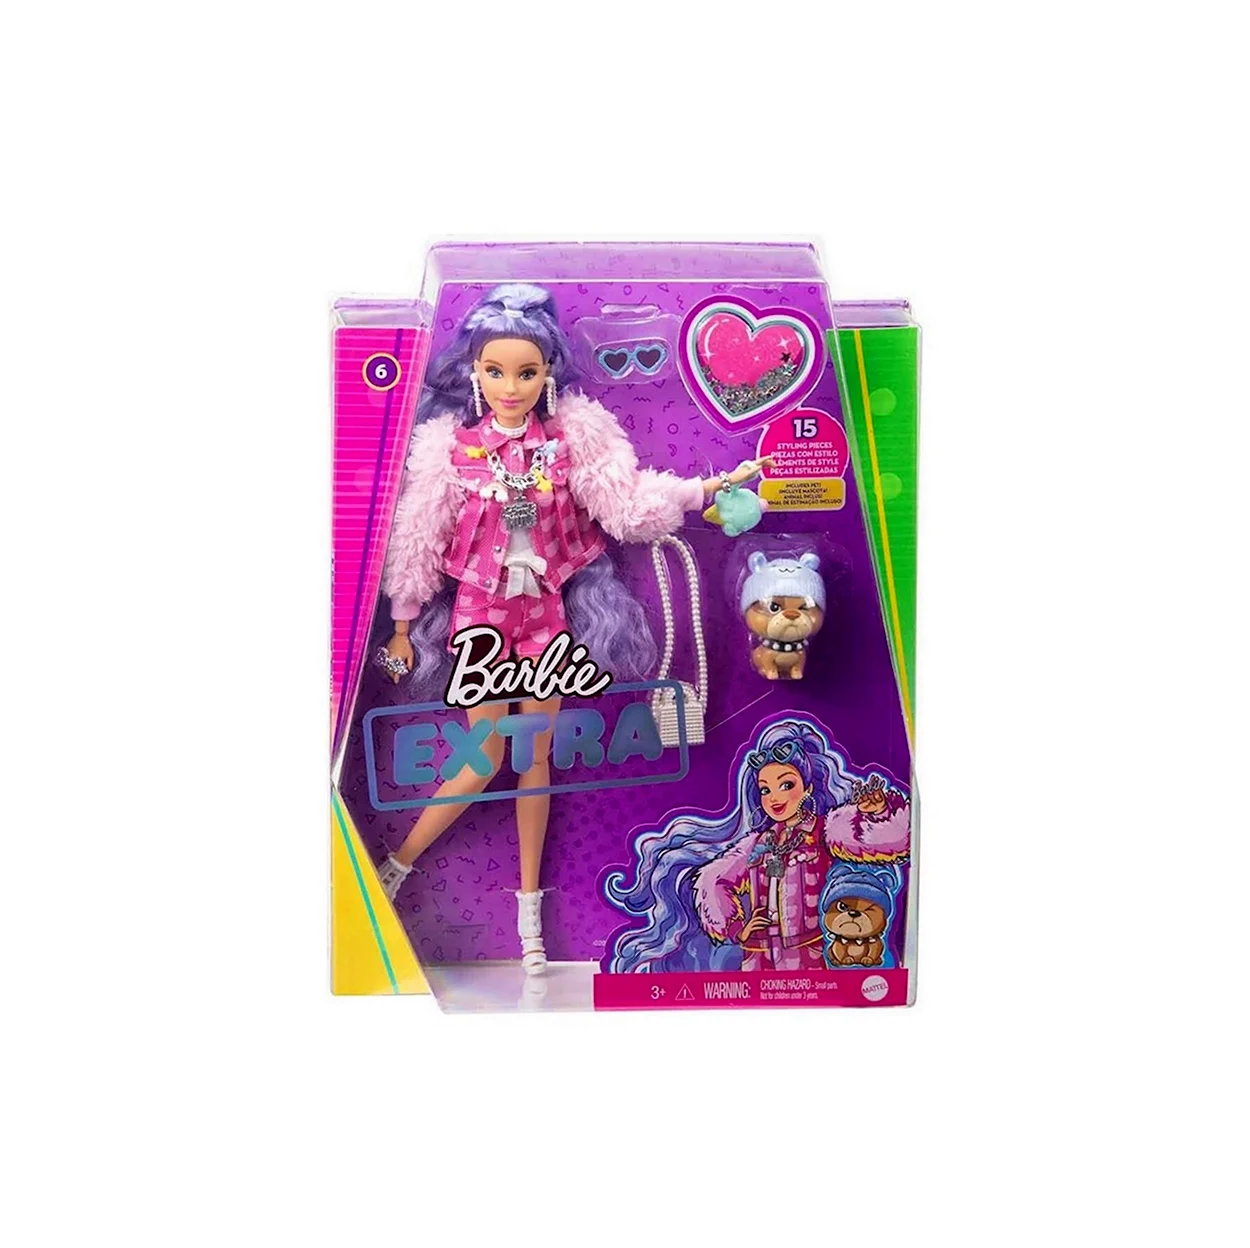 Кукла Barbie Экстра Милли с сиреневыми волосами gxf08. Игрушка